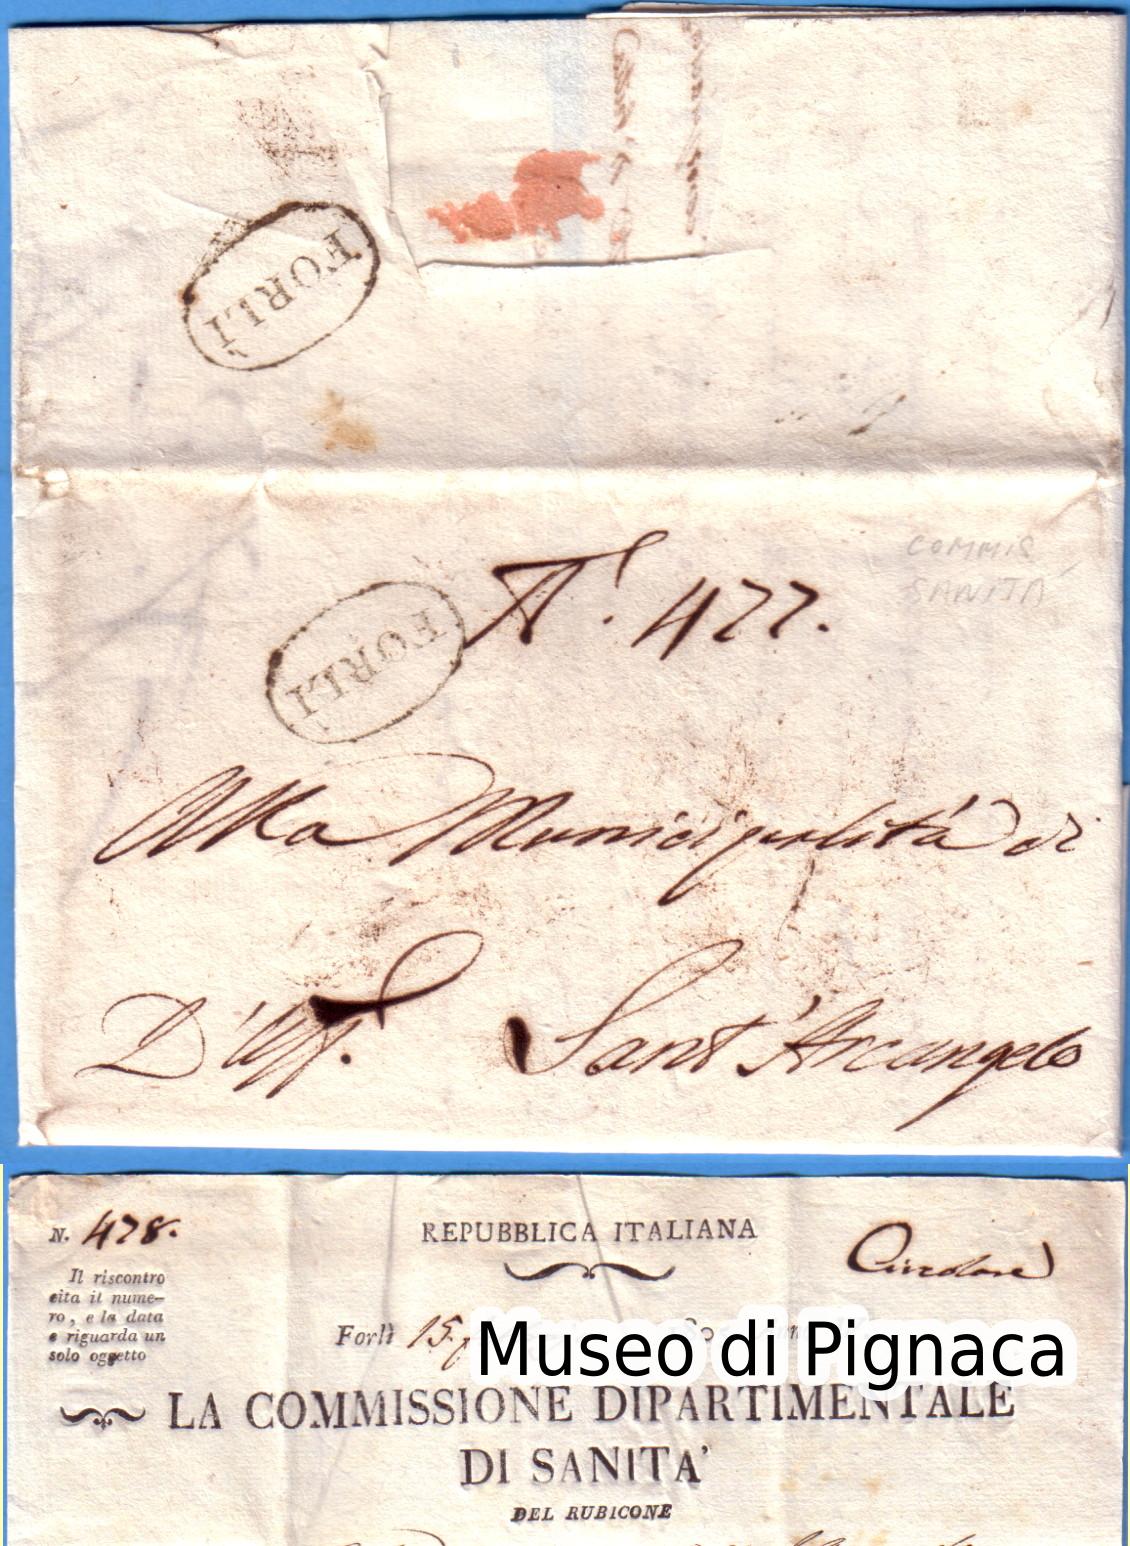 1805-_15-febbraio_-lettera-commissione-di-sanit_-doppio-timbro-ovale-fronte-retro